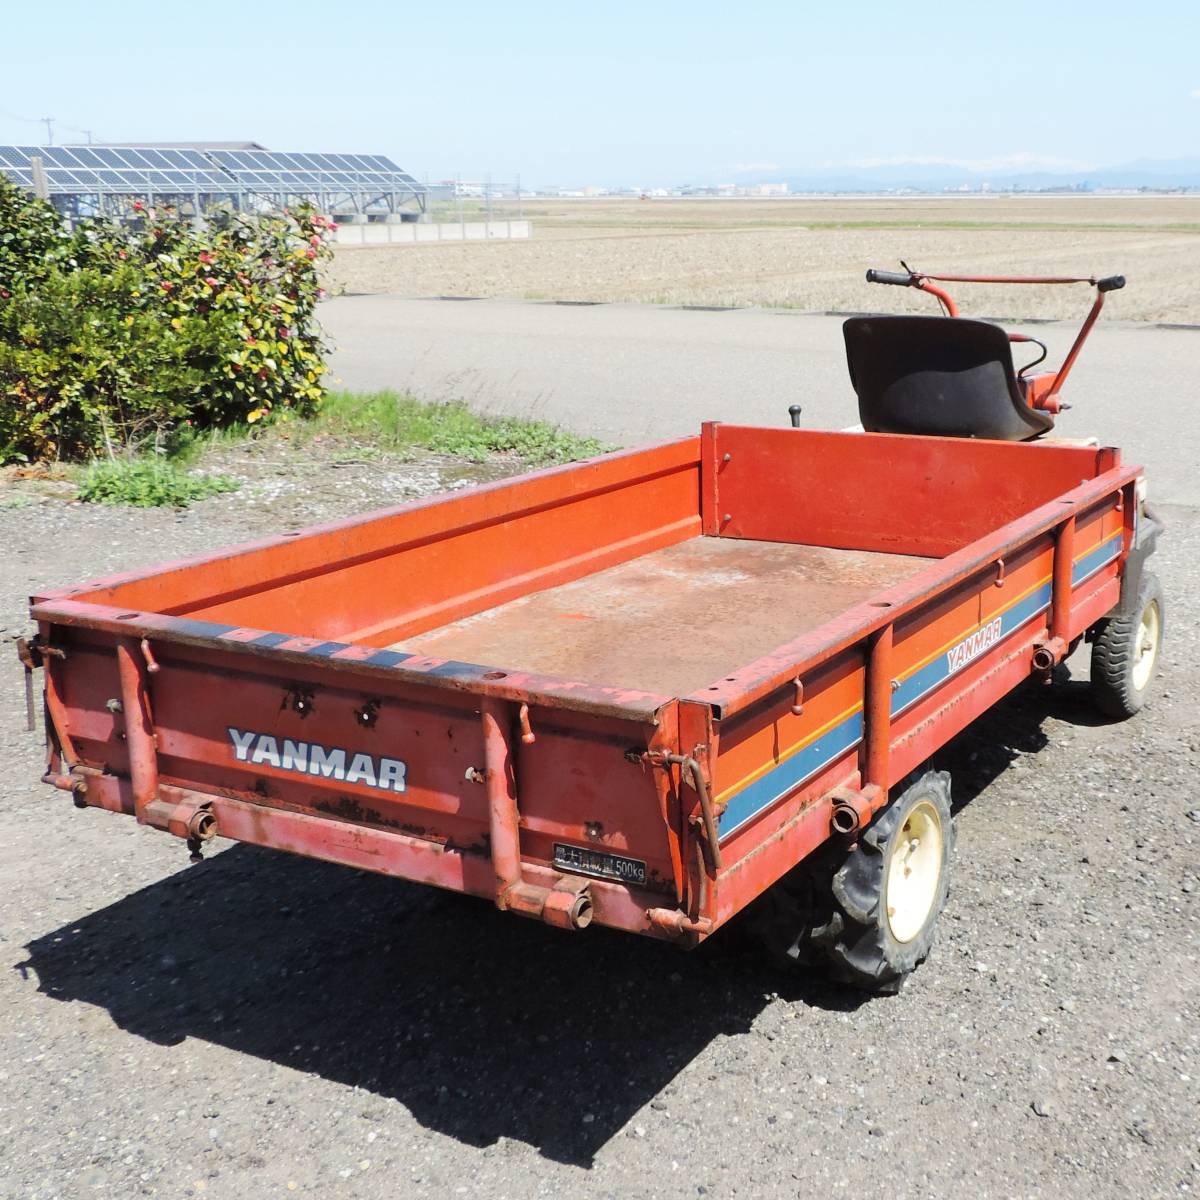 [ Niigata ] Yanmar сельское хозяйство для транспортировка машина FDA182 cell 6 лошадиные силы дизель грузовик грузоподъёмность 500kg двойные шины 6 колесо маленький размер перевозка старый пассажирский / ходьба 